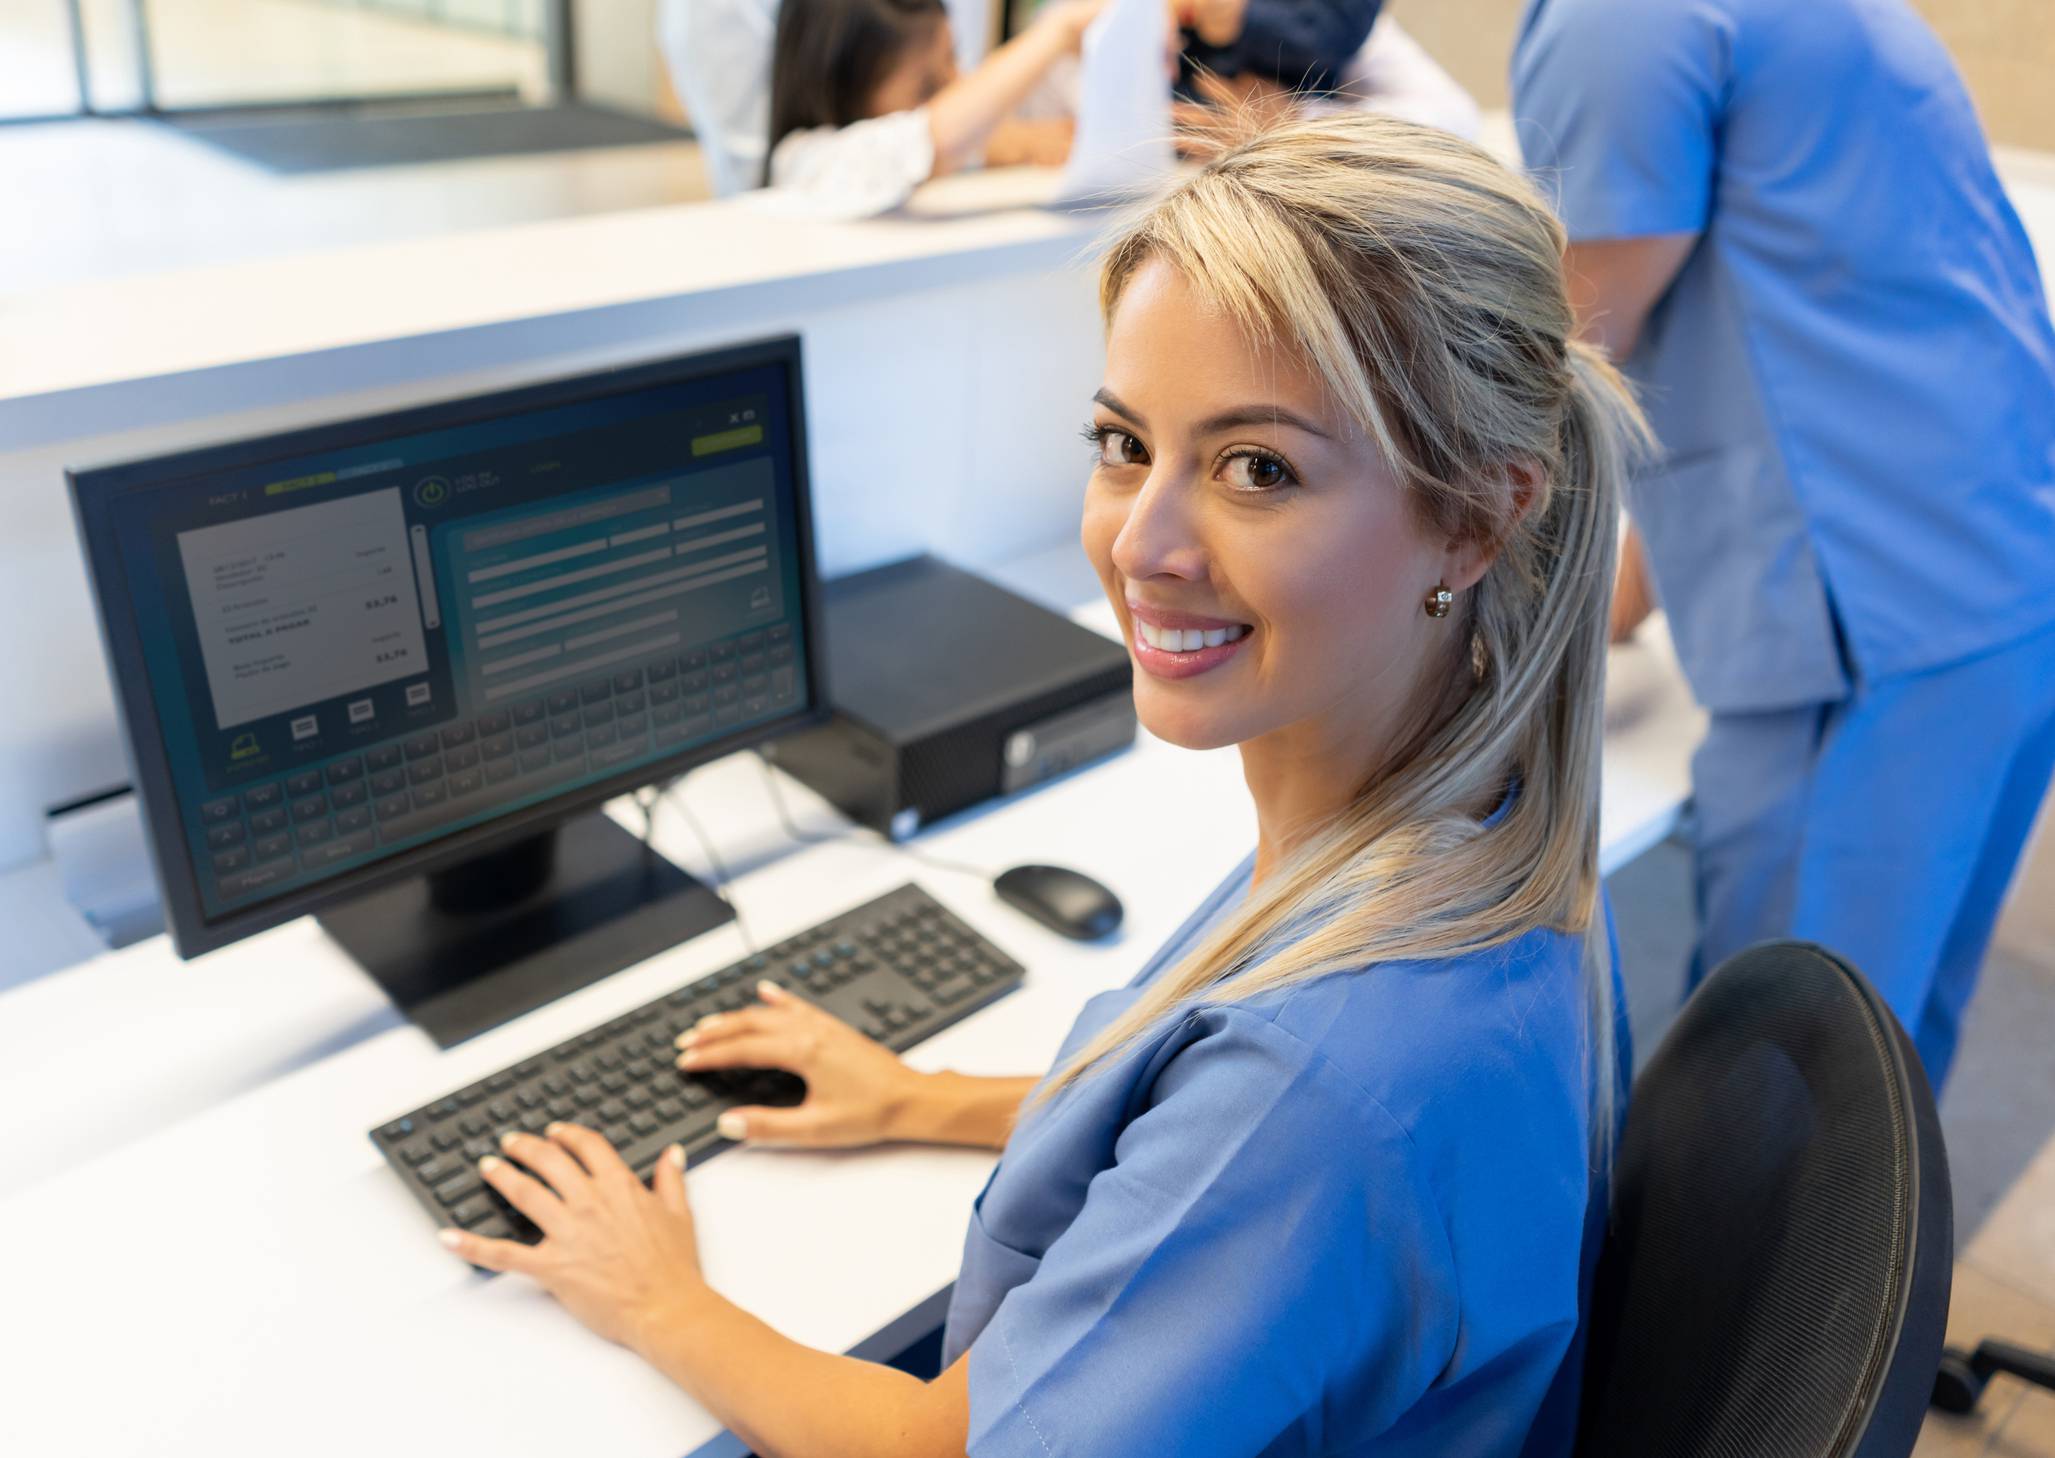 Na foto, uma moça com um jaleco azul aparece usando um computador.